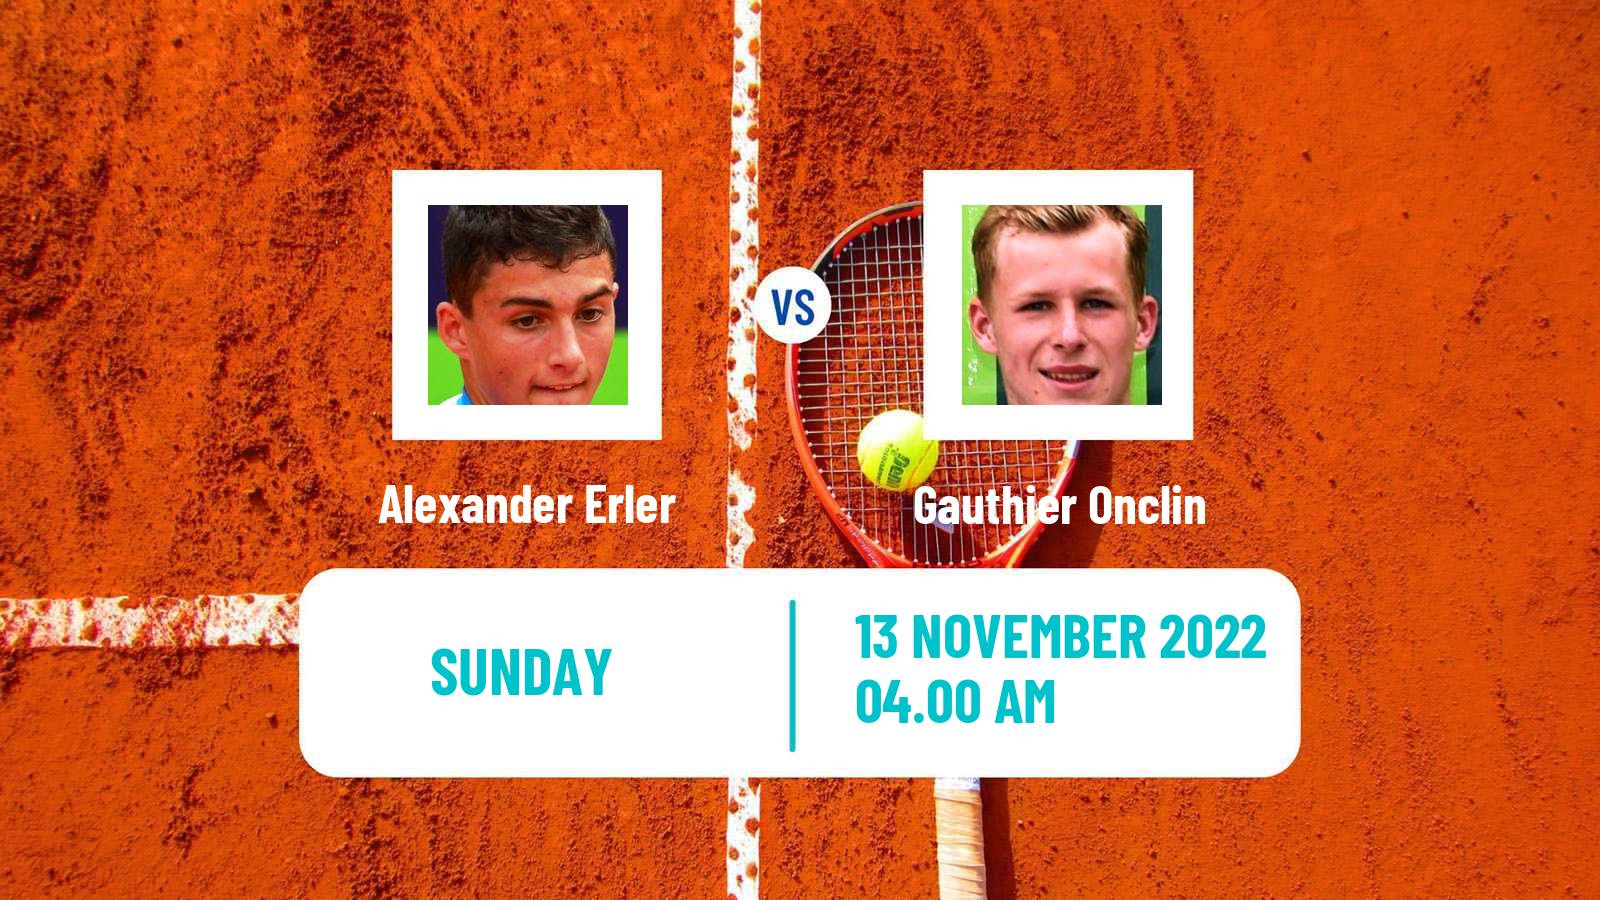 Tennis ATP Challenger Alexander Erler - Gauthier Onclin